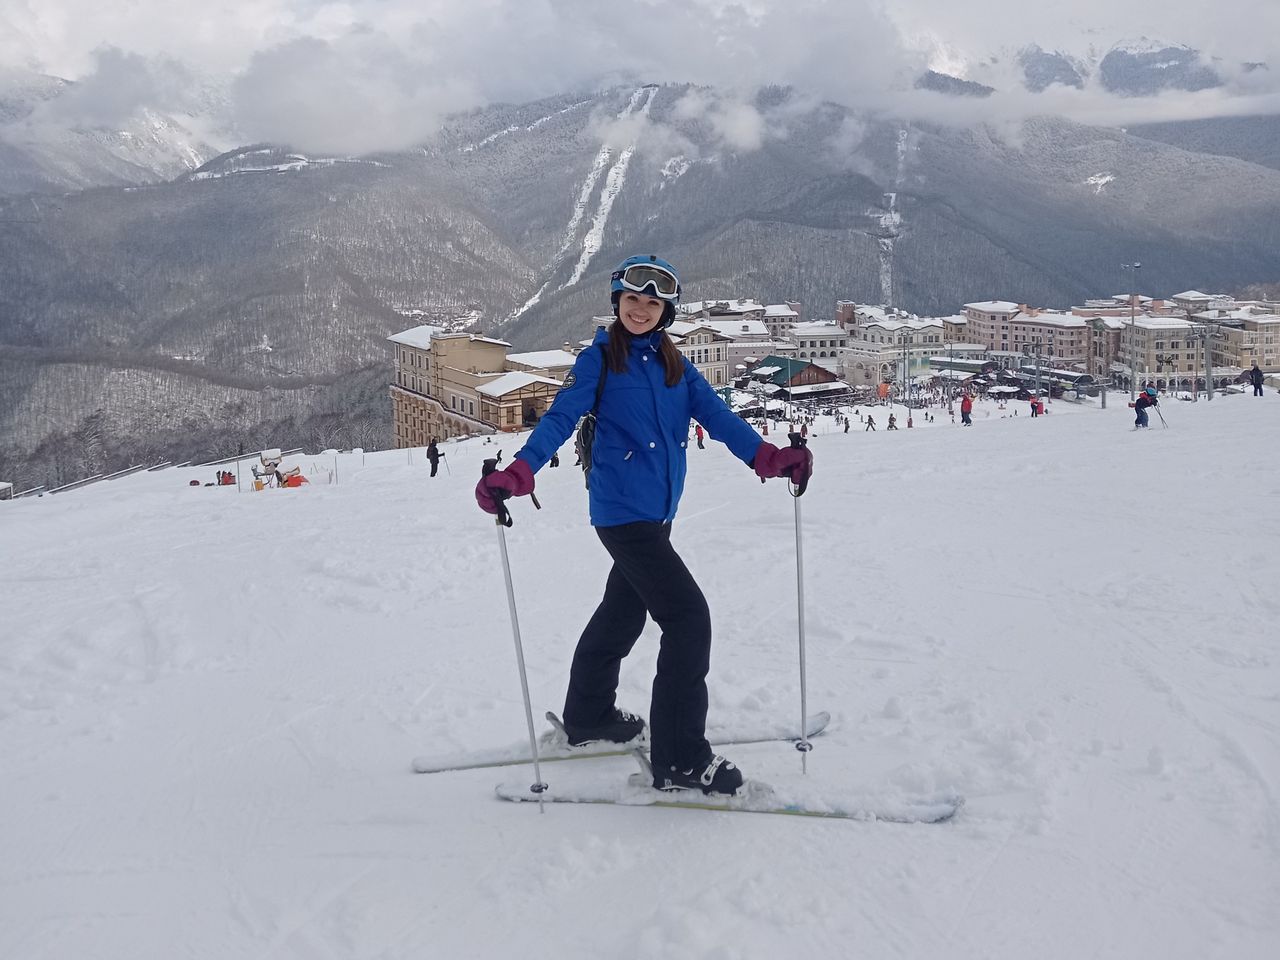 Услуги инструктора по горным лыжам и сноуборду | Цена 9000₽, отзывы, описание экскурсии